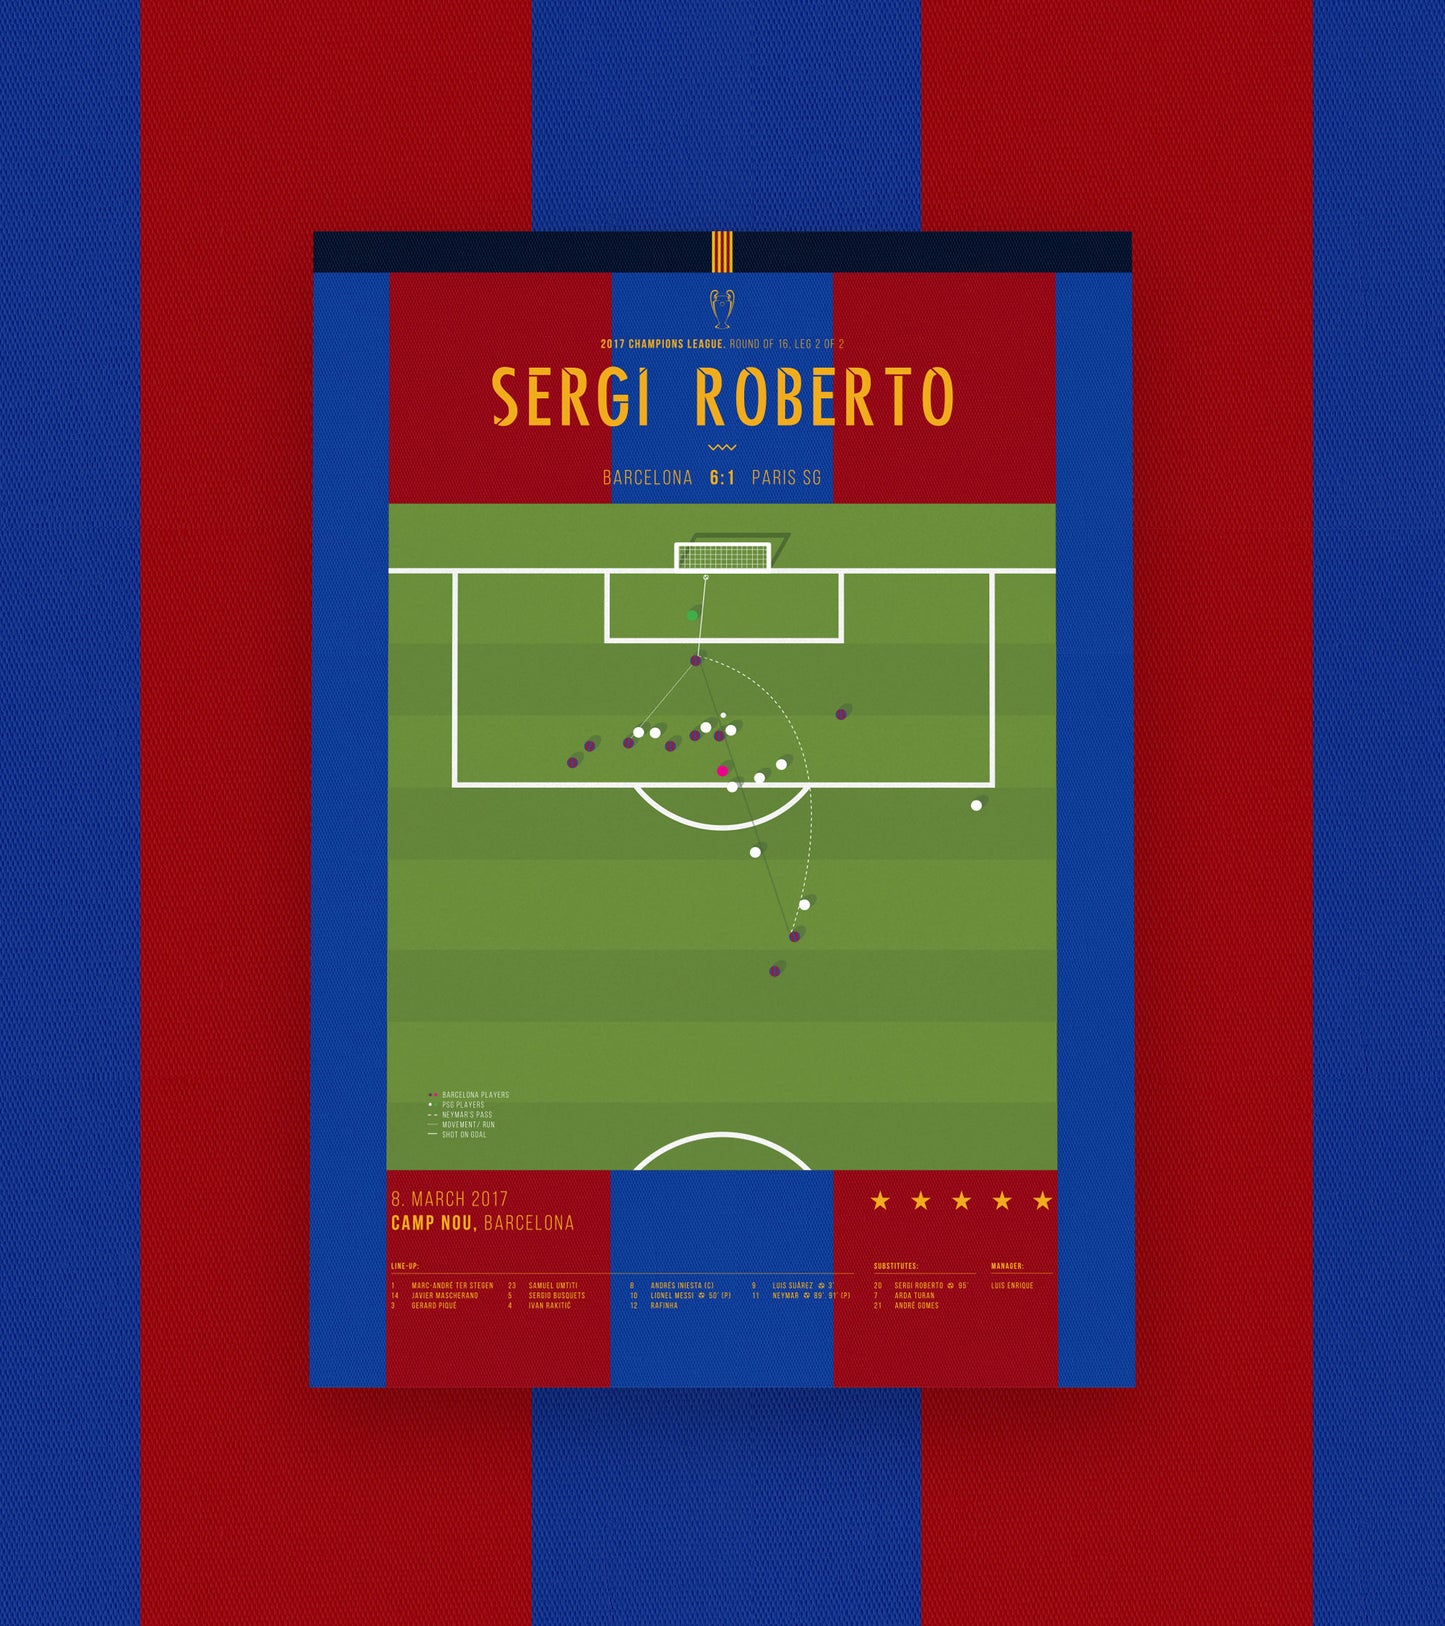 El gol de Sergi Roberto para culminar "La Remontada"